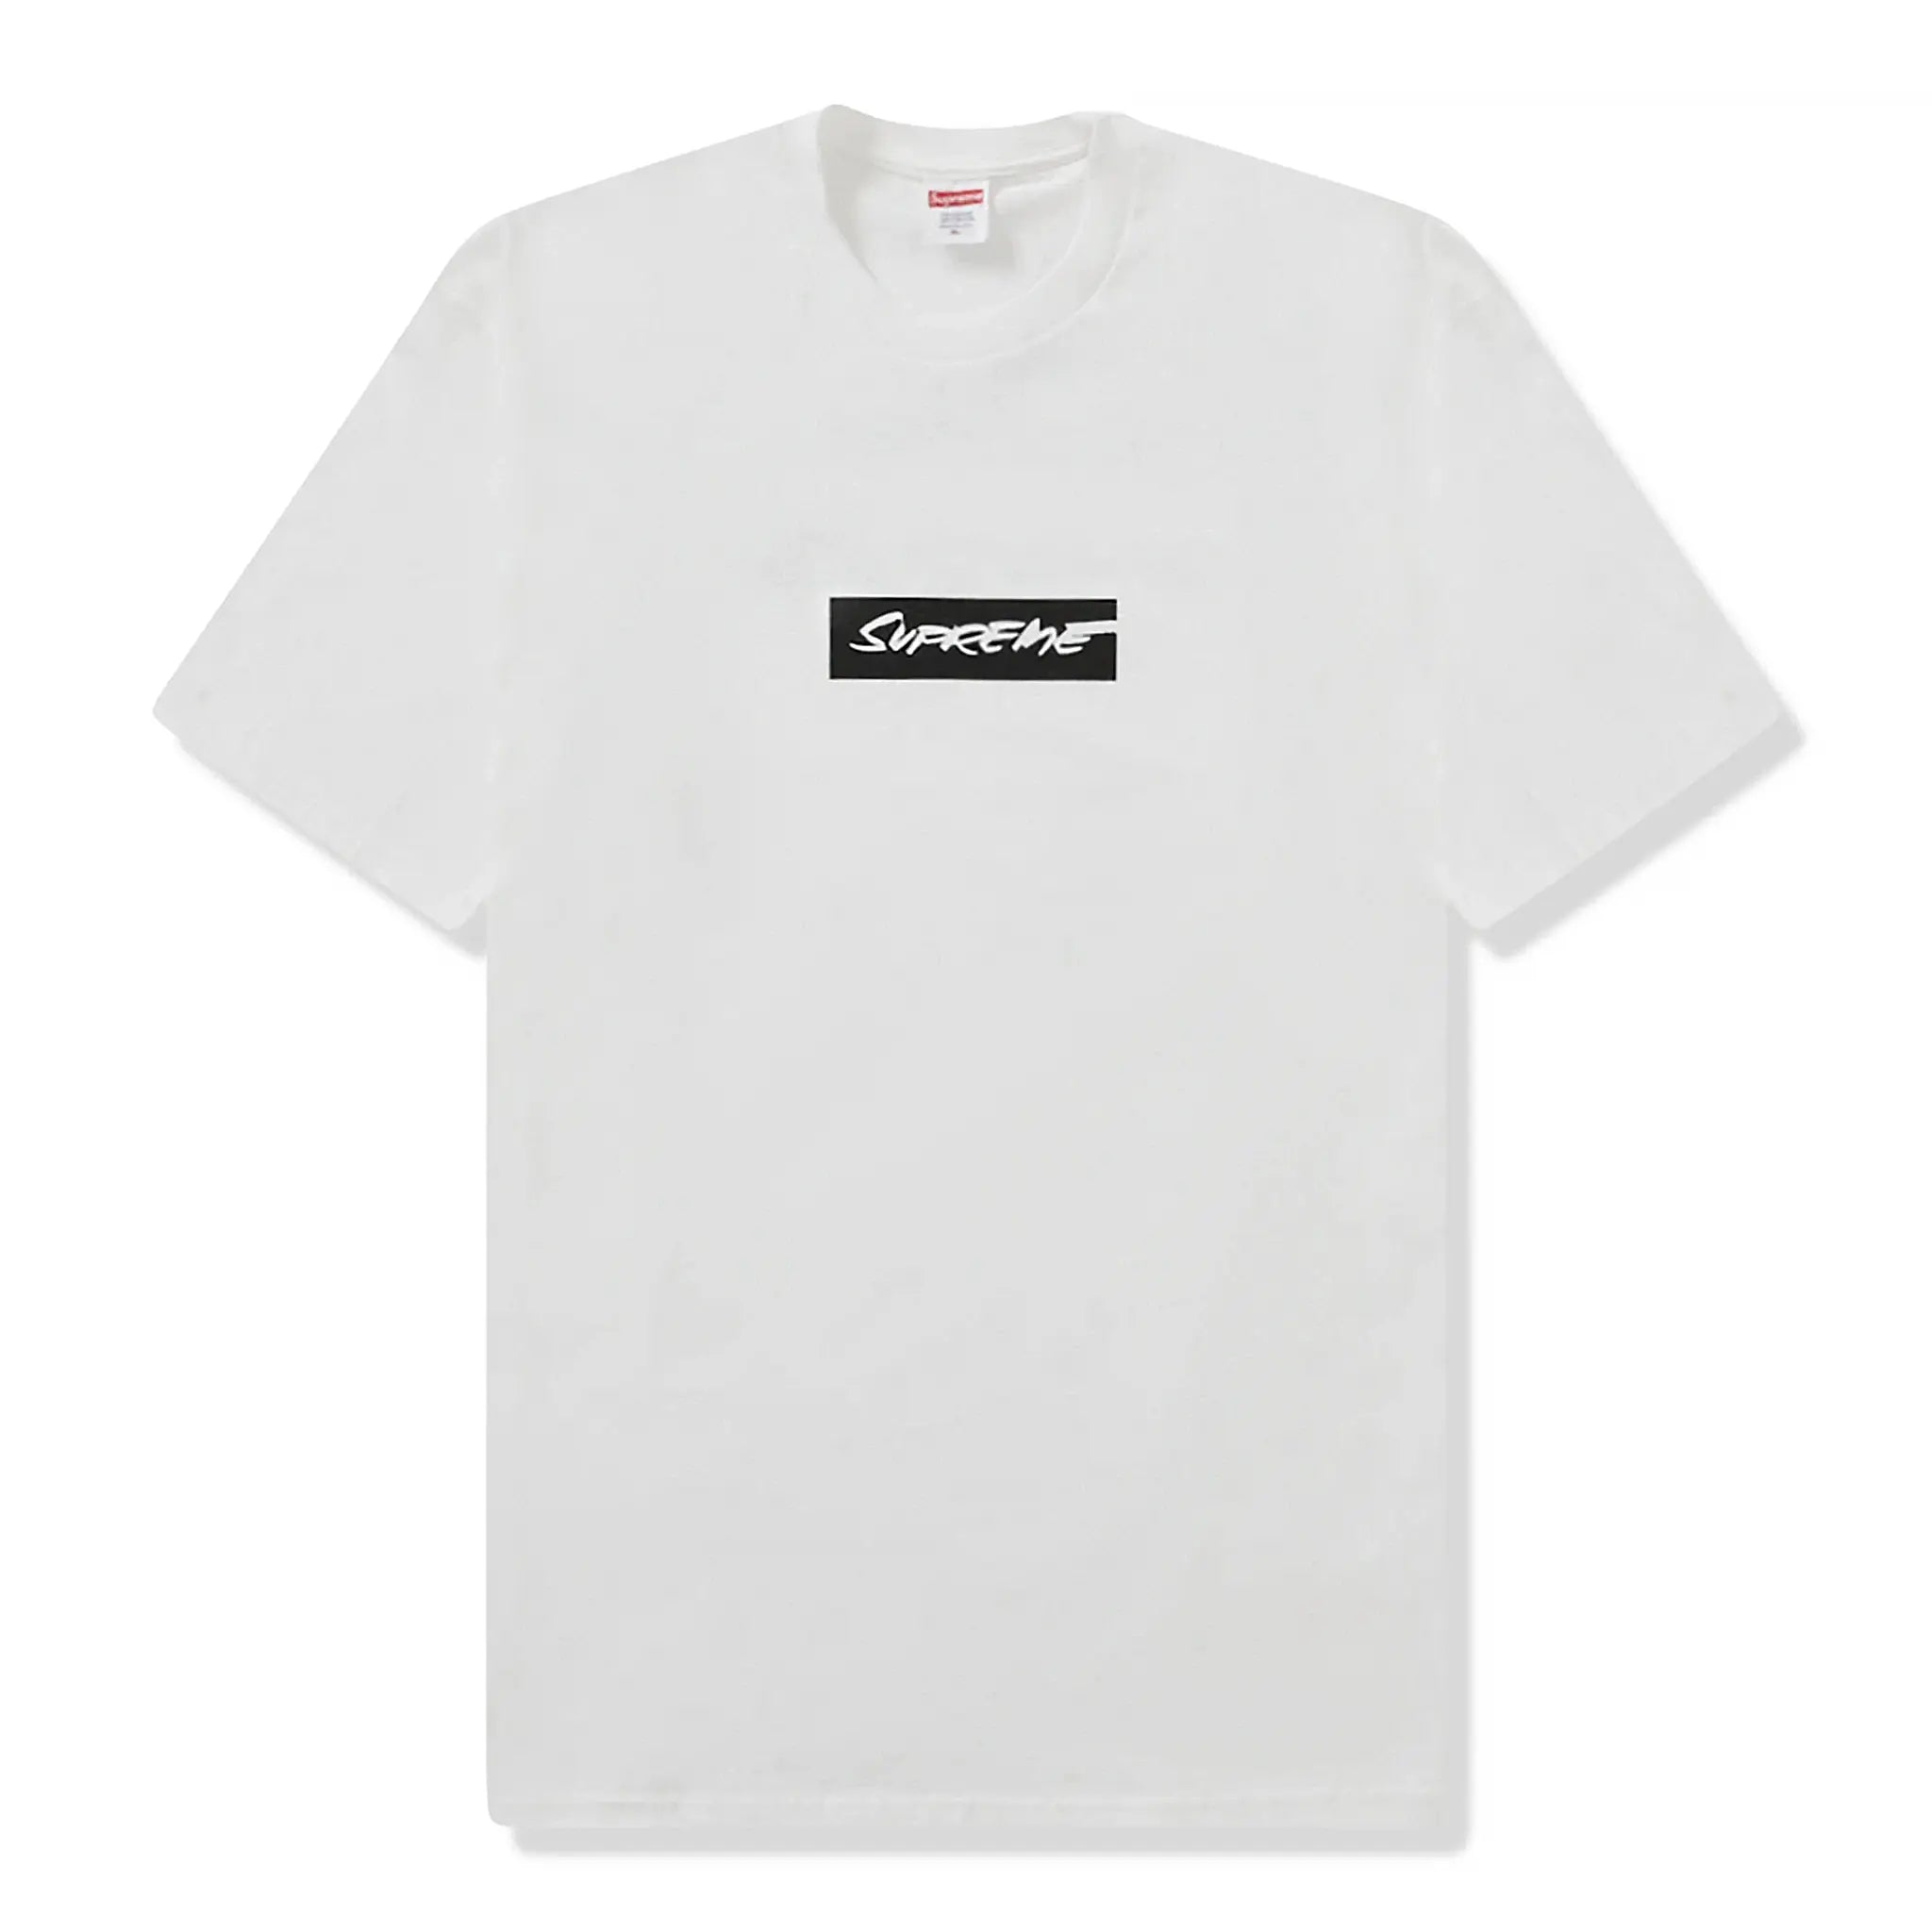 Front view of Supreme Futura Box Logo White T Shirt